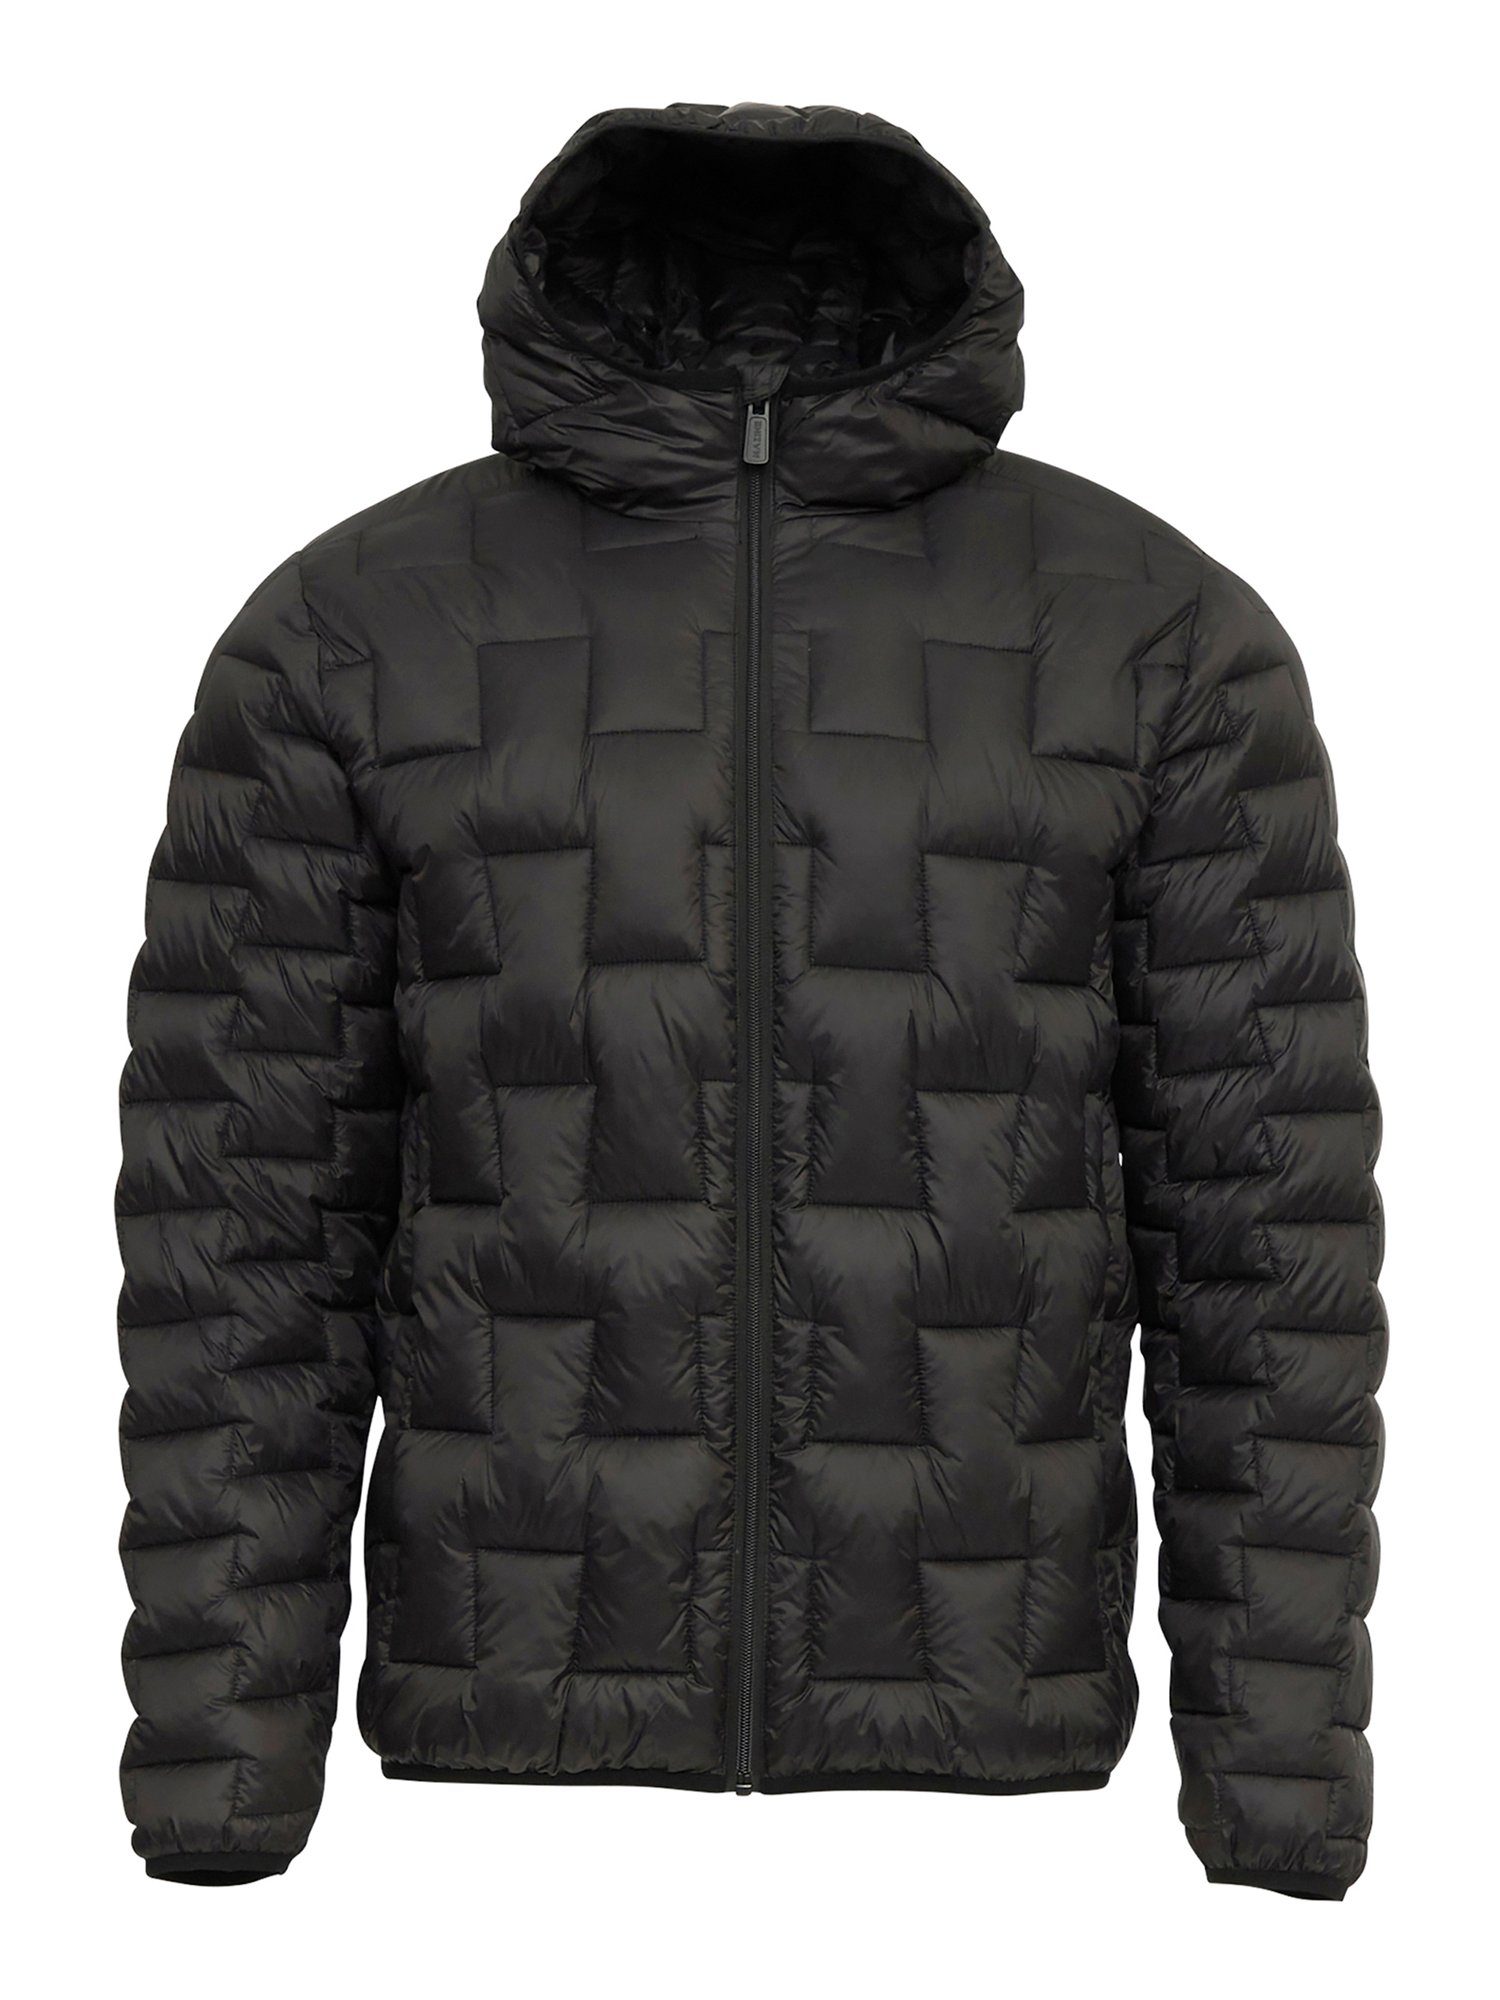 MAZINE Winterjacke Connelly Light Padded Jacket warm gefüttert black